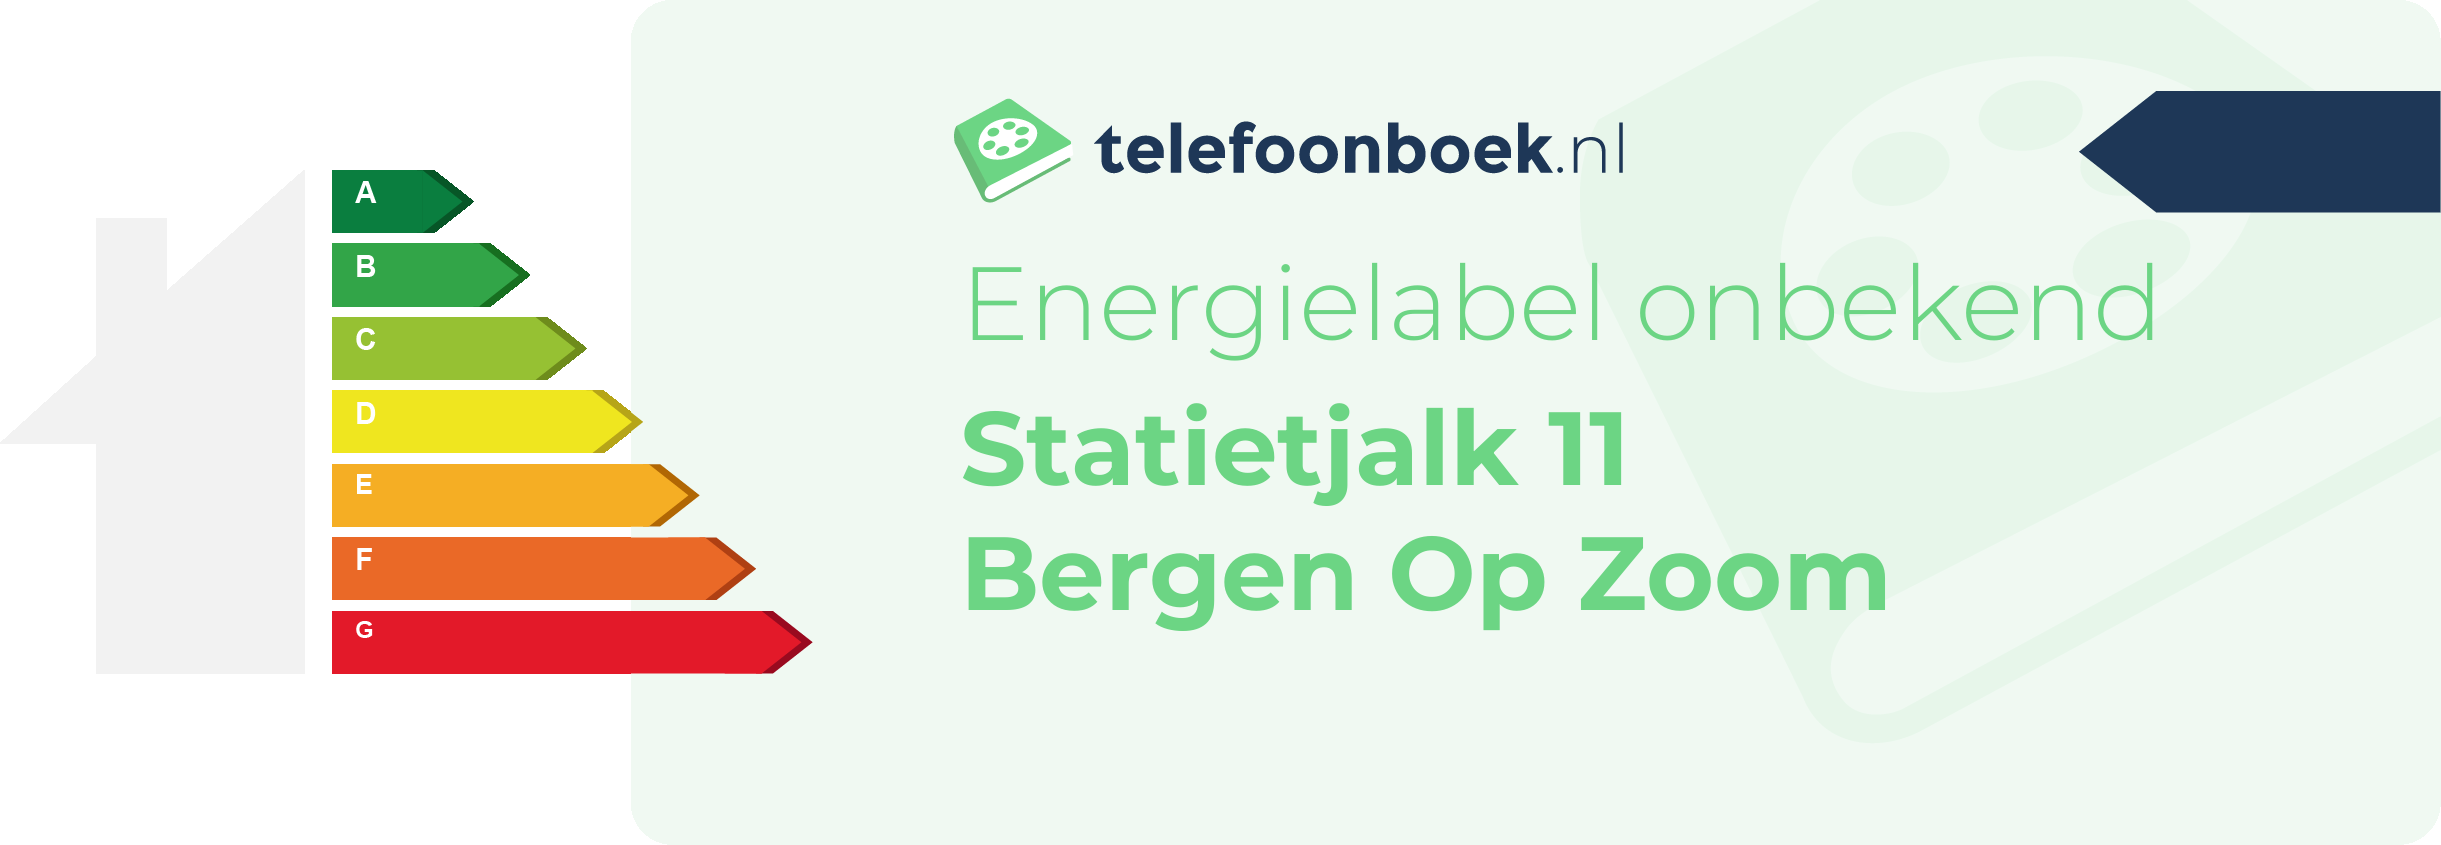 Energielabel Statietjalk 11 Bergen Op Zoom